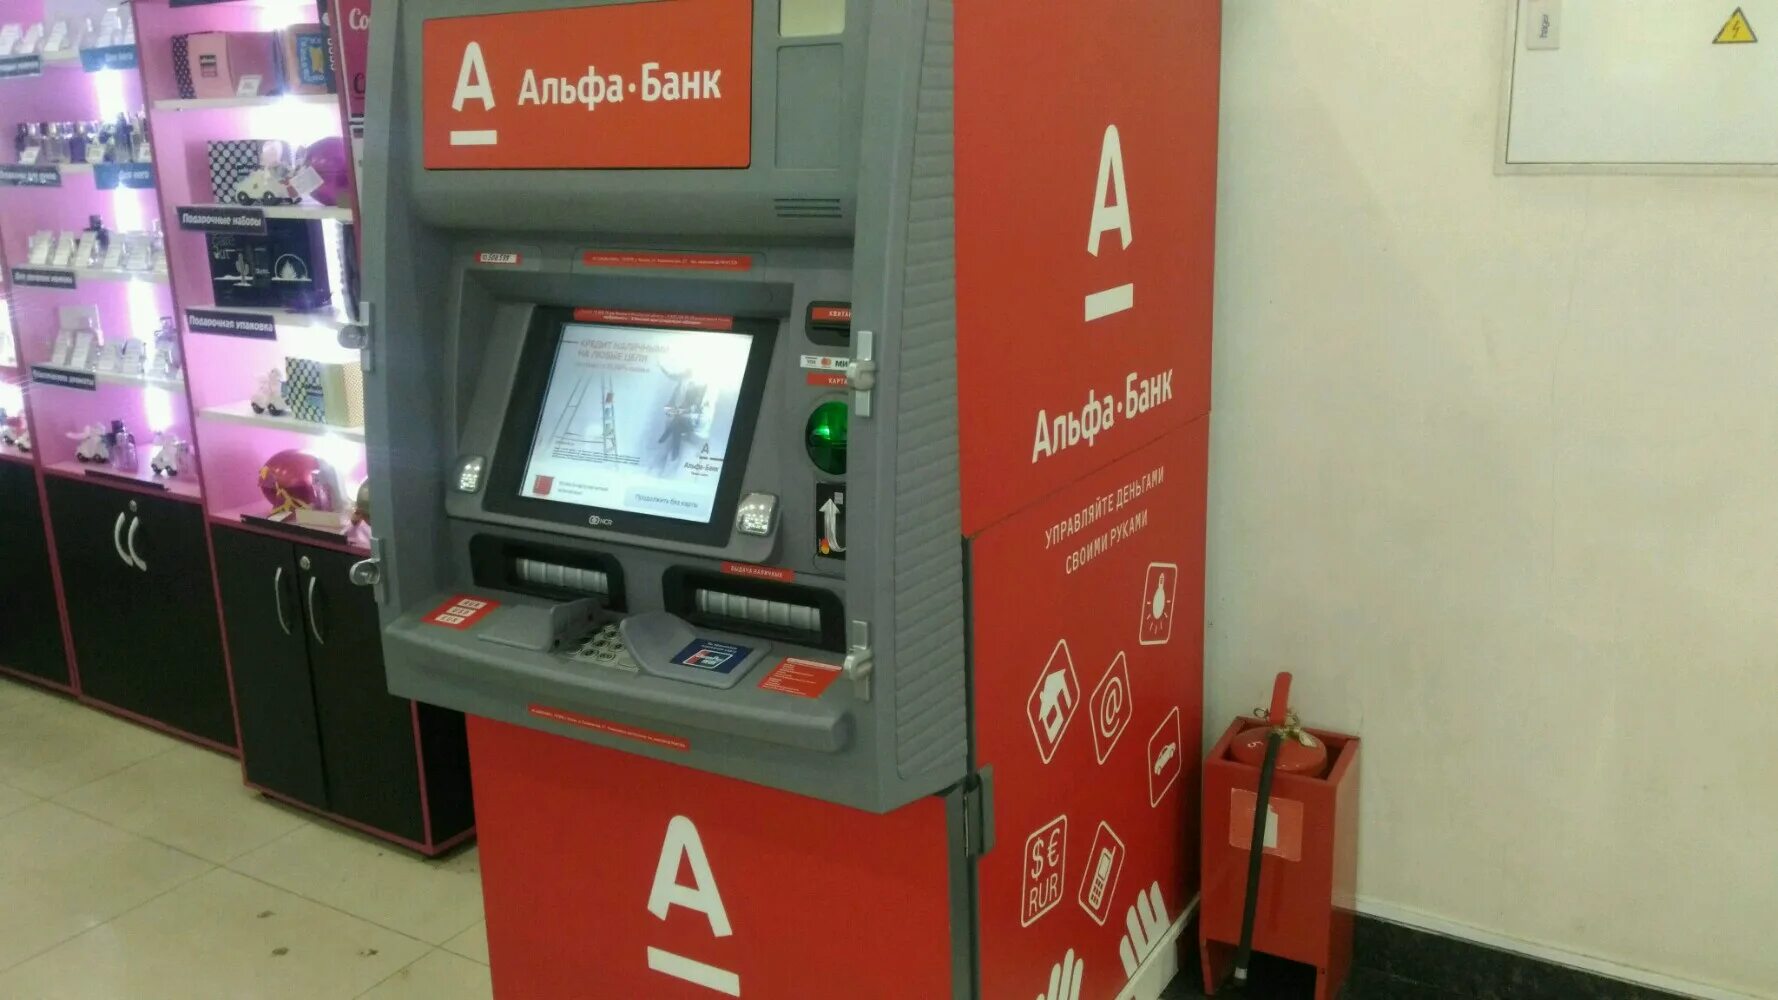 Альфа банк банкомат на внесение